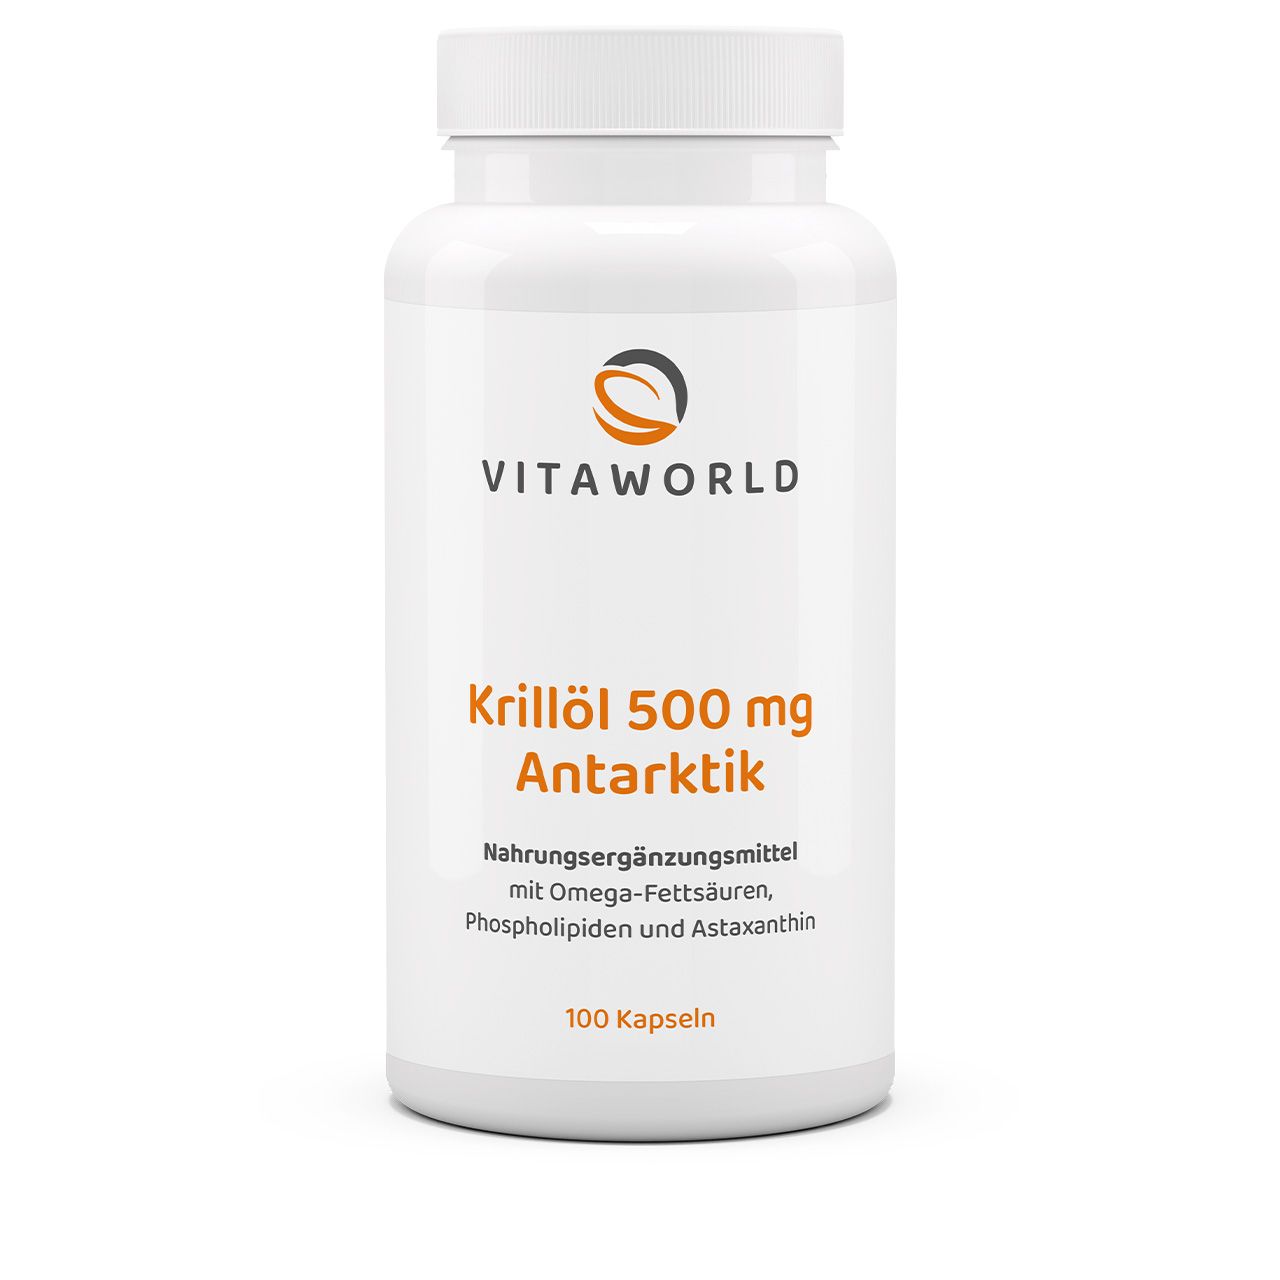 Vitaworld Krillöl Antarktik 500 mg | 100 Kapseln | mit Omega-3-Fettsäuren | mit Astaxanthin und Cholin | gluten- und laktosefrei